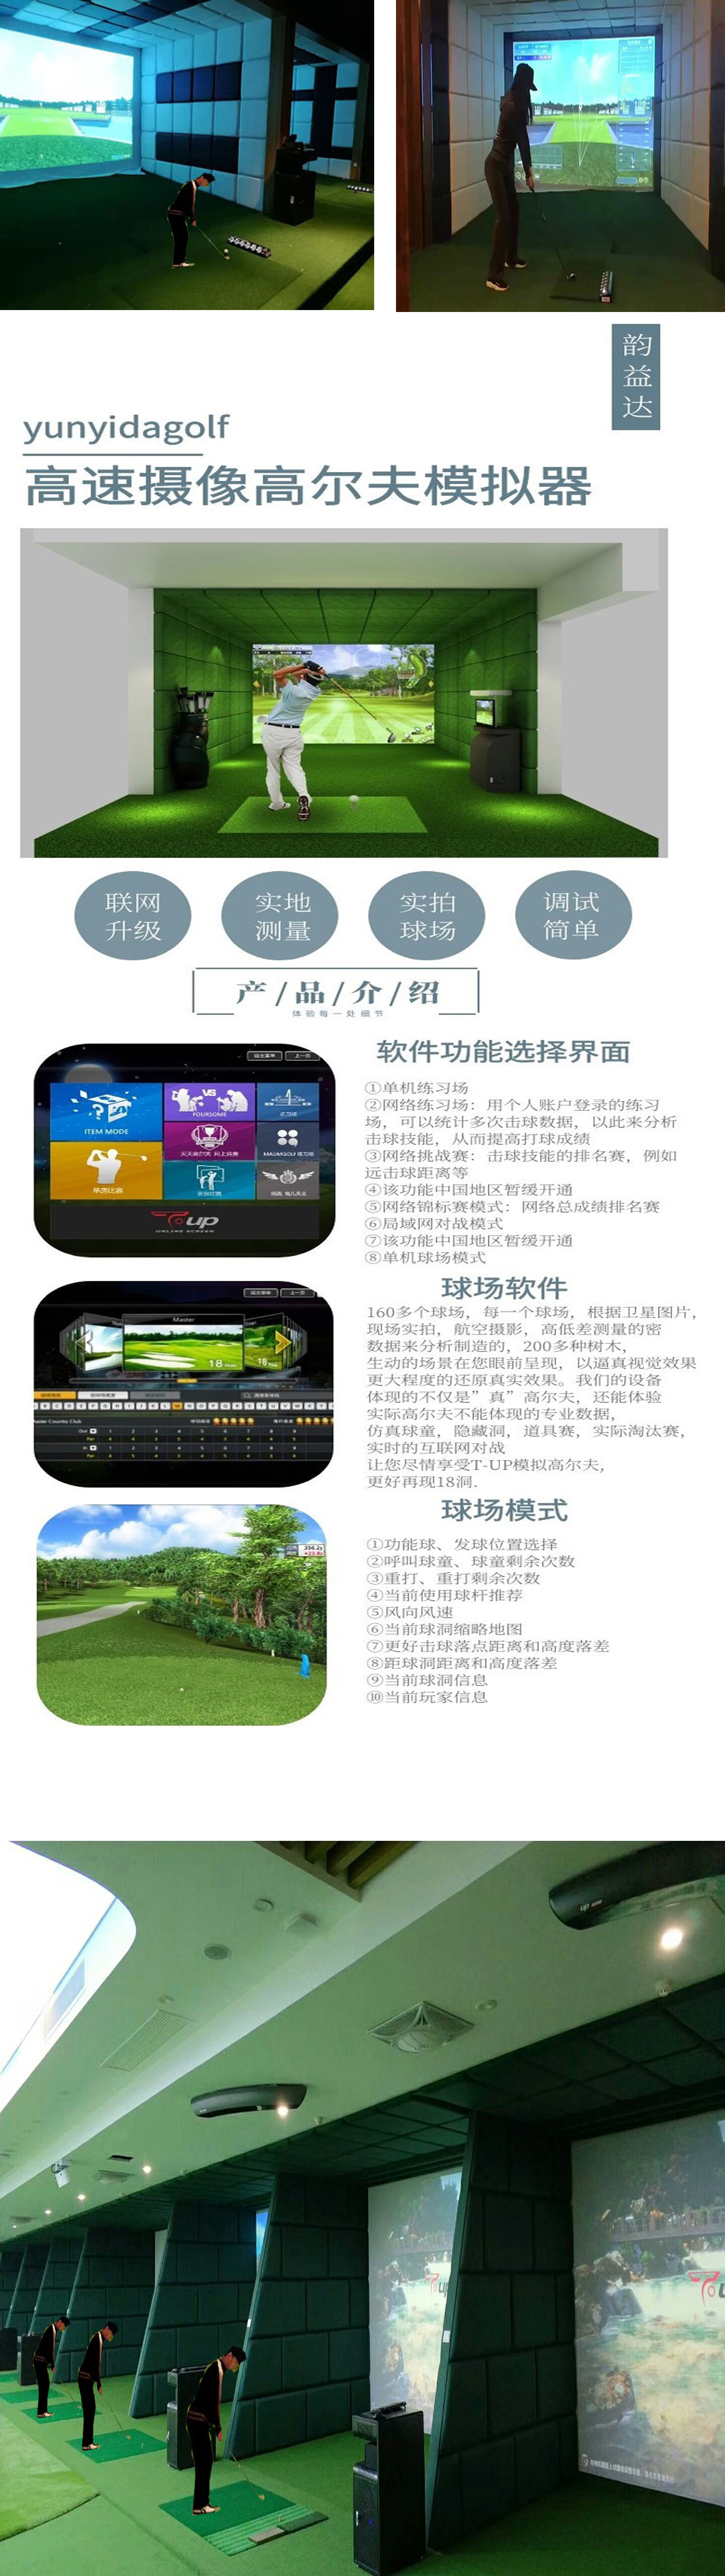 高尔夫模拟器系统-2.jpg